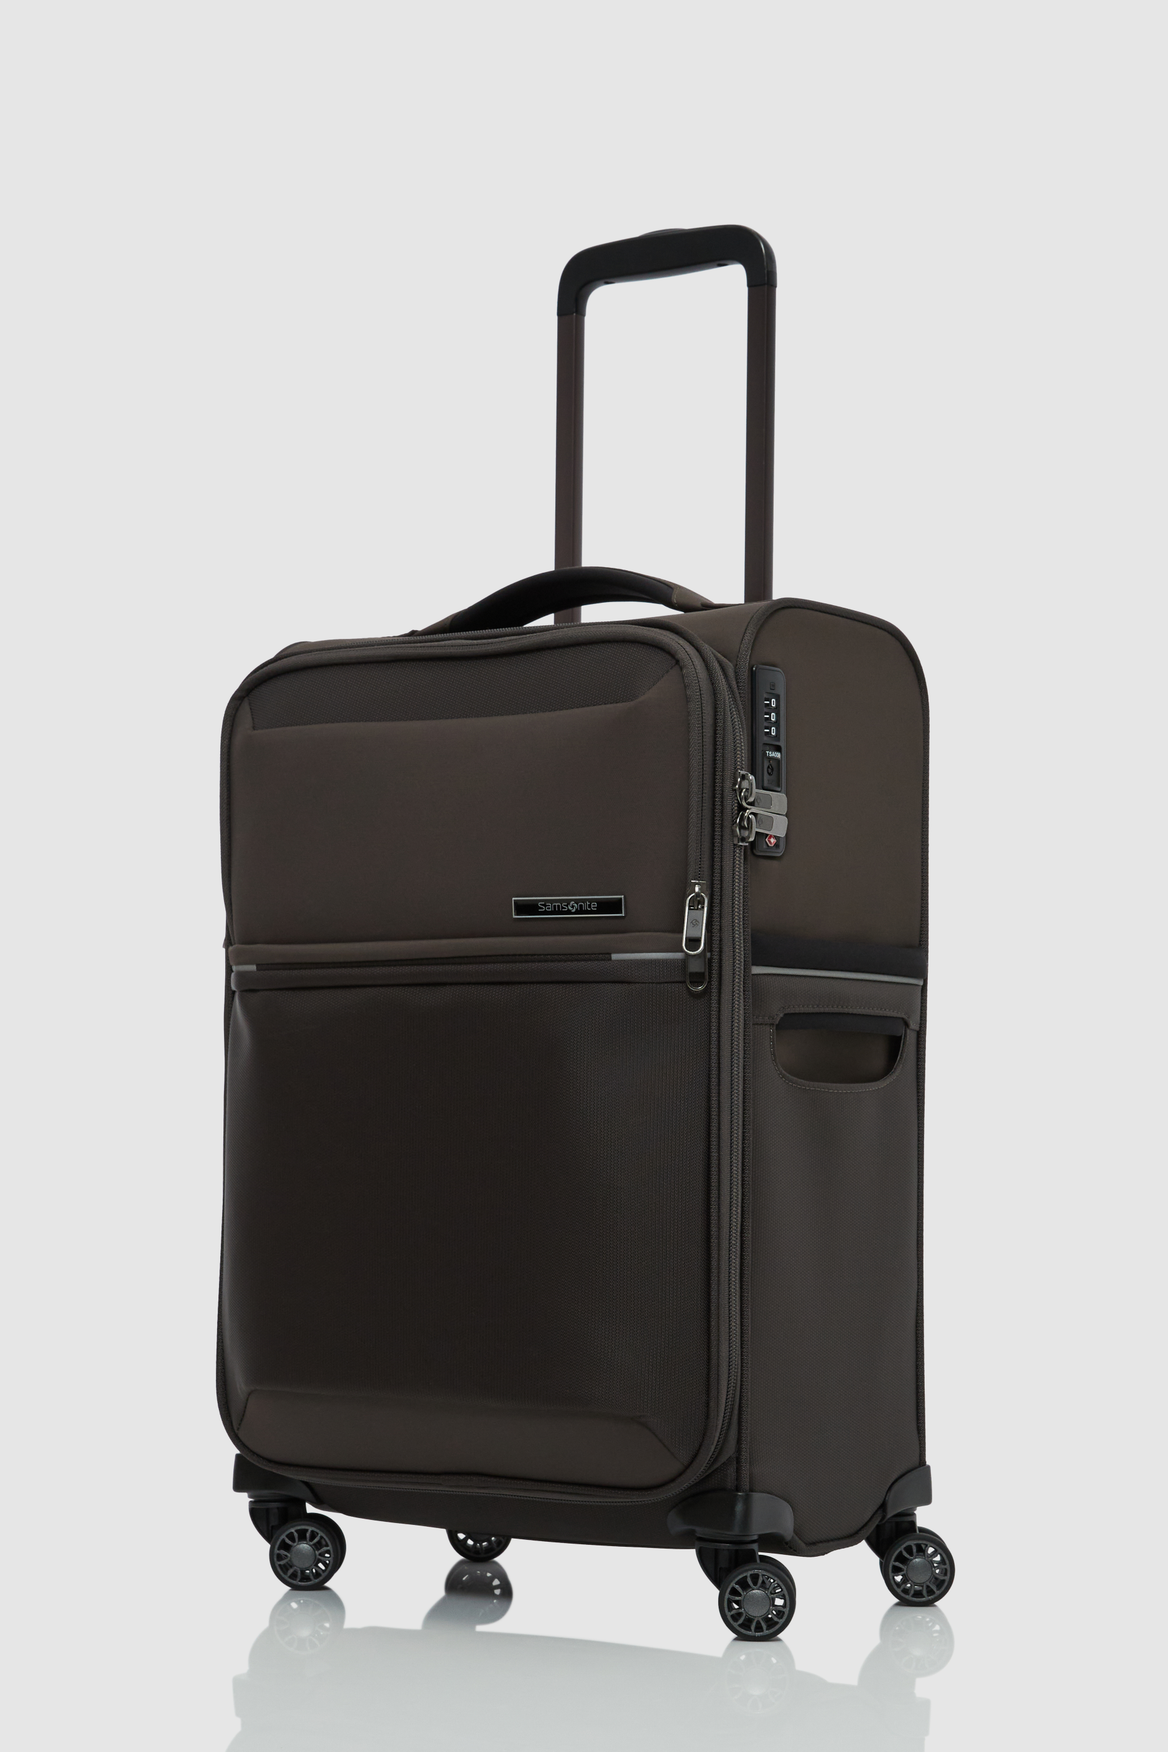 Samsonite 73Hours 55cm Suitcase – Strandbags Australia